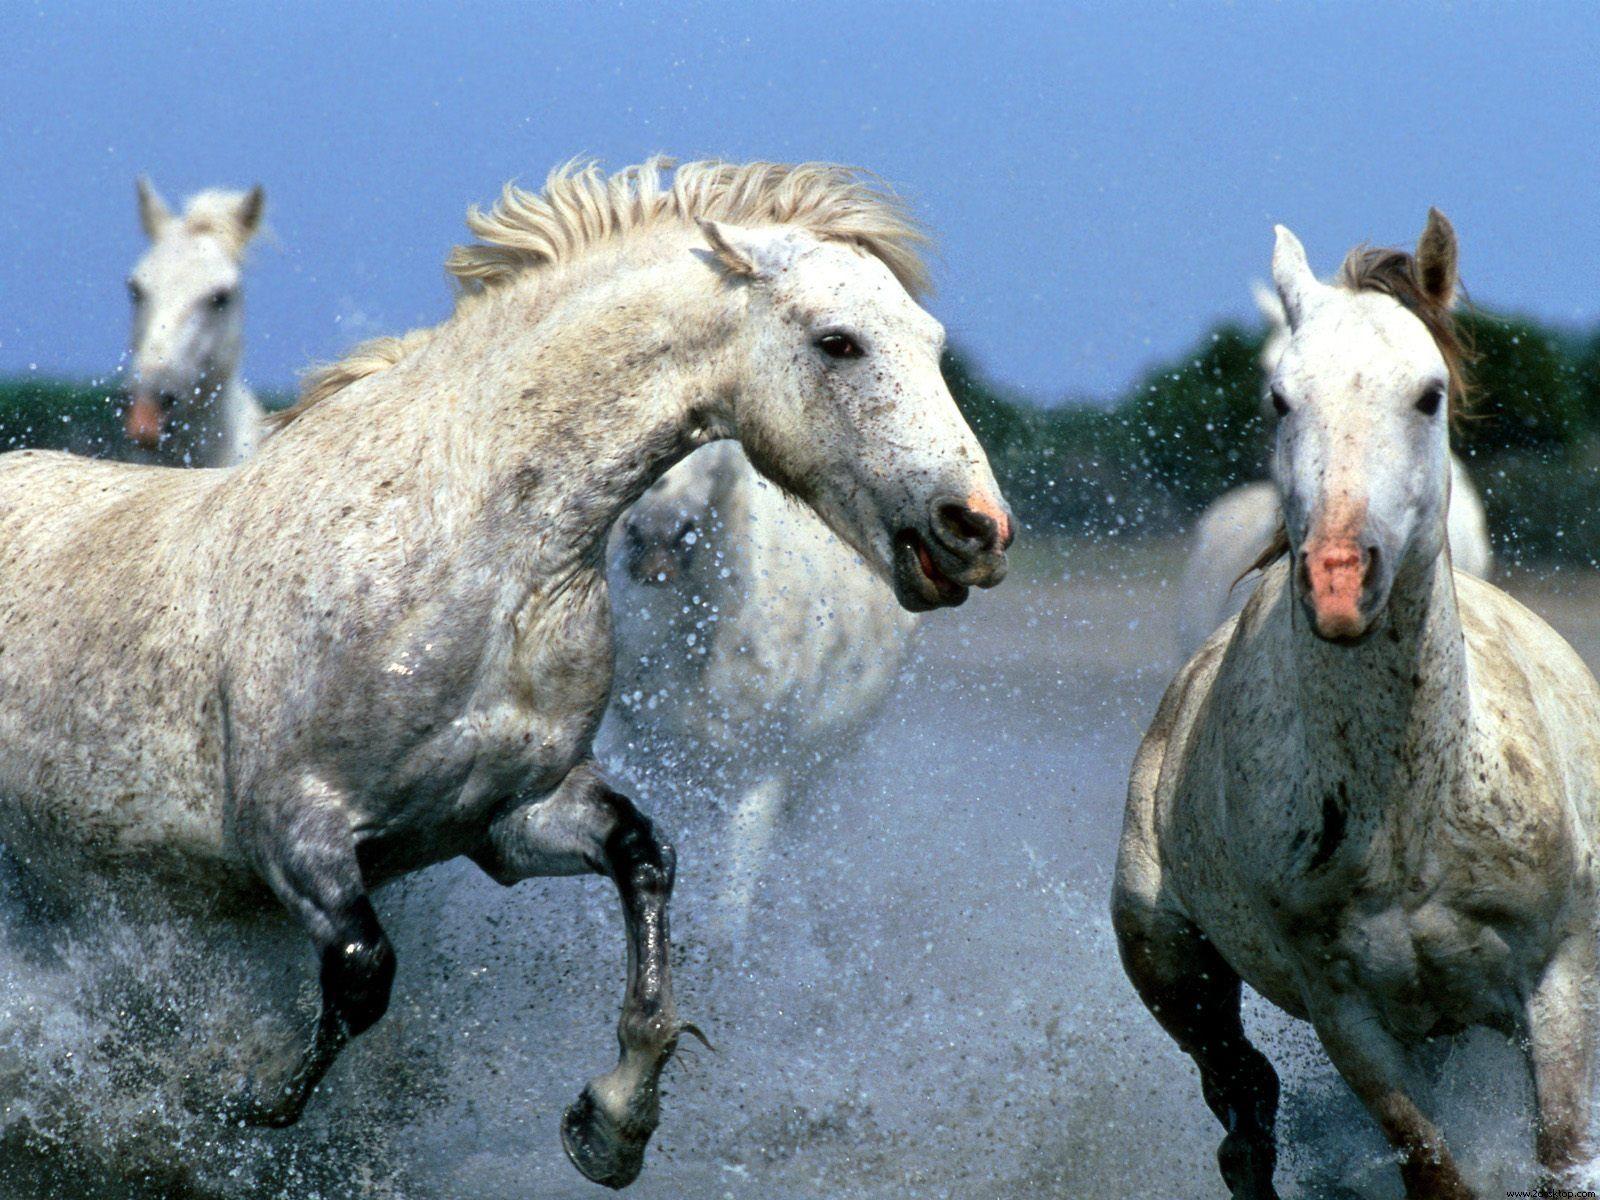 Beautiful Horses Running Wild Wallpapers Top Free Beautiful Horses